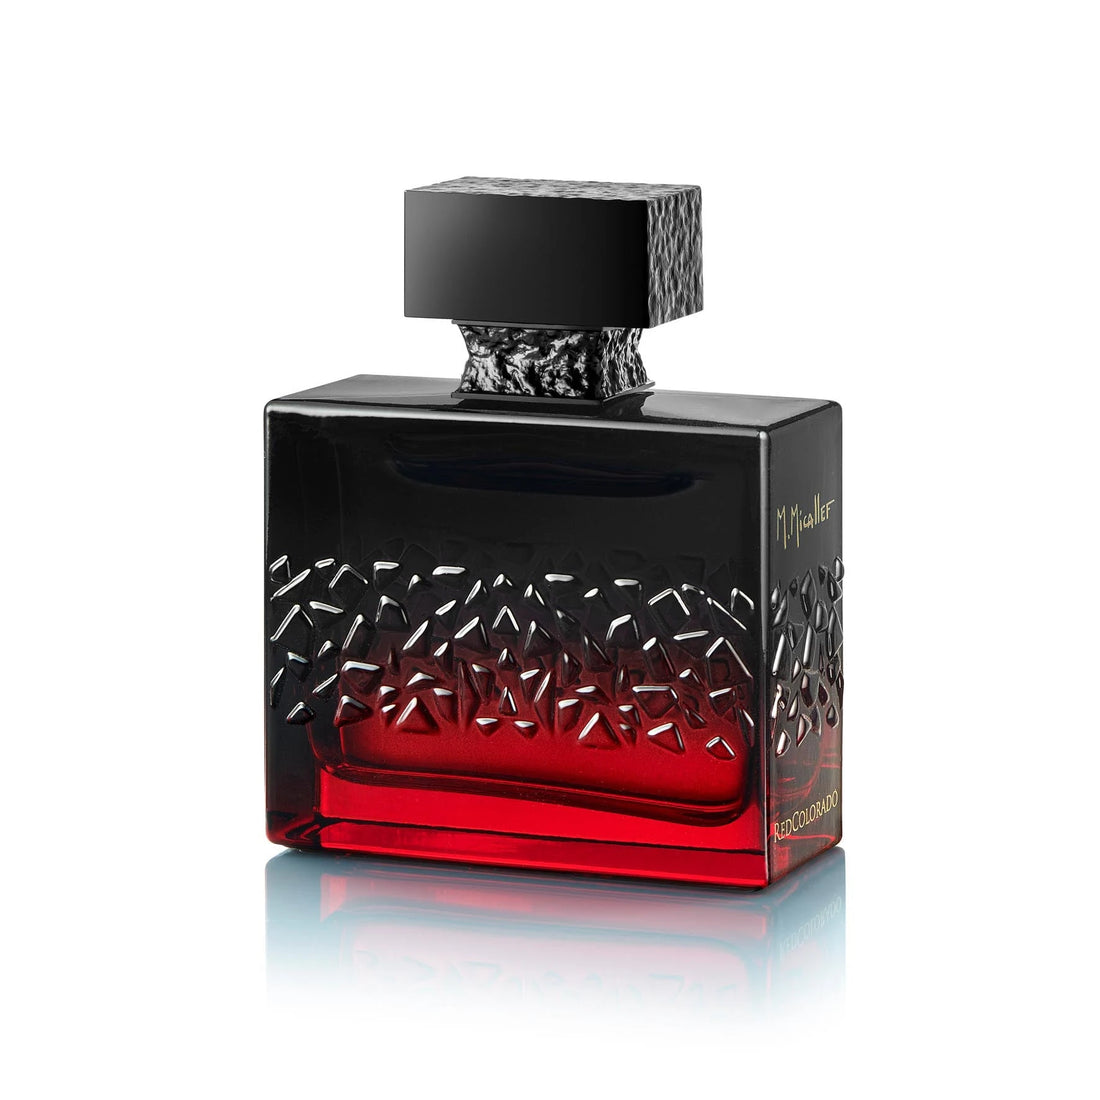 METRO.Micallef Colección Joyas Redcolorado Eau De Parfum 100 ml